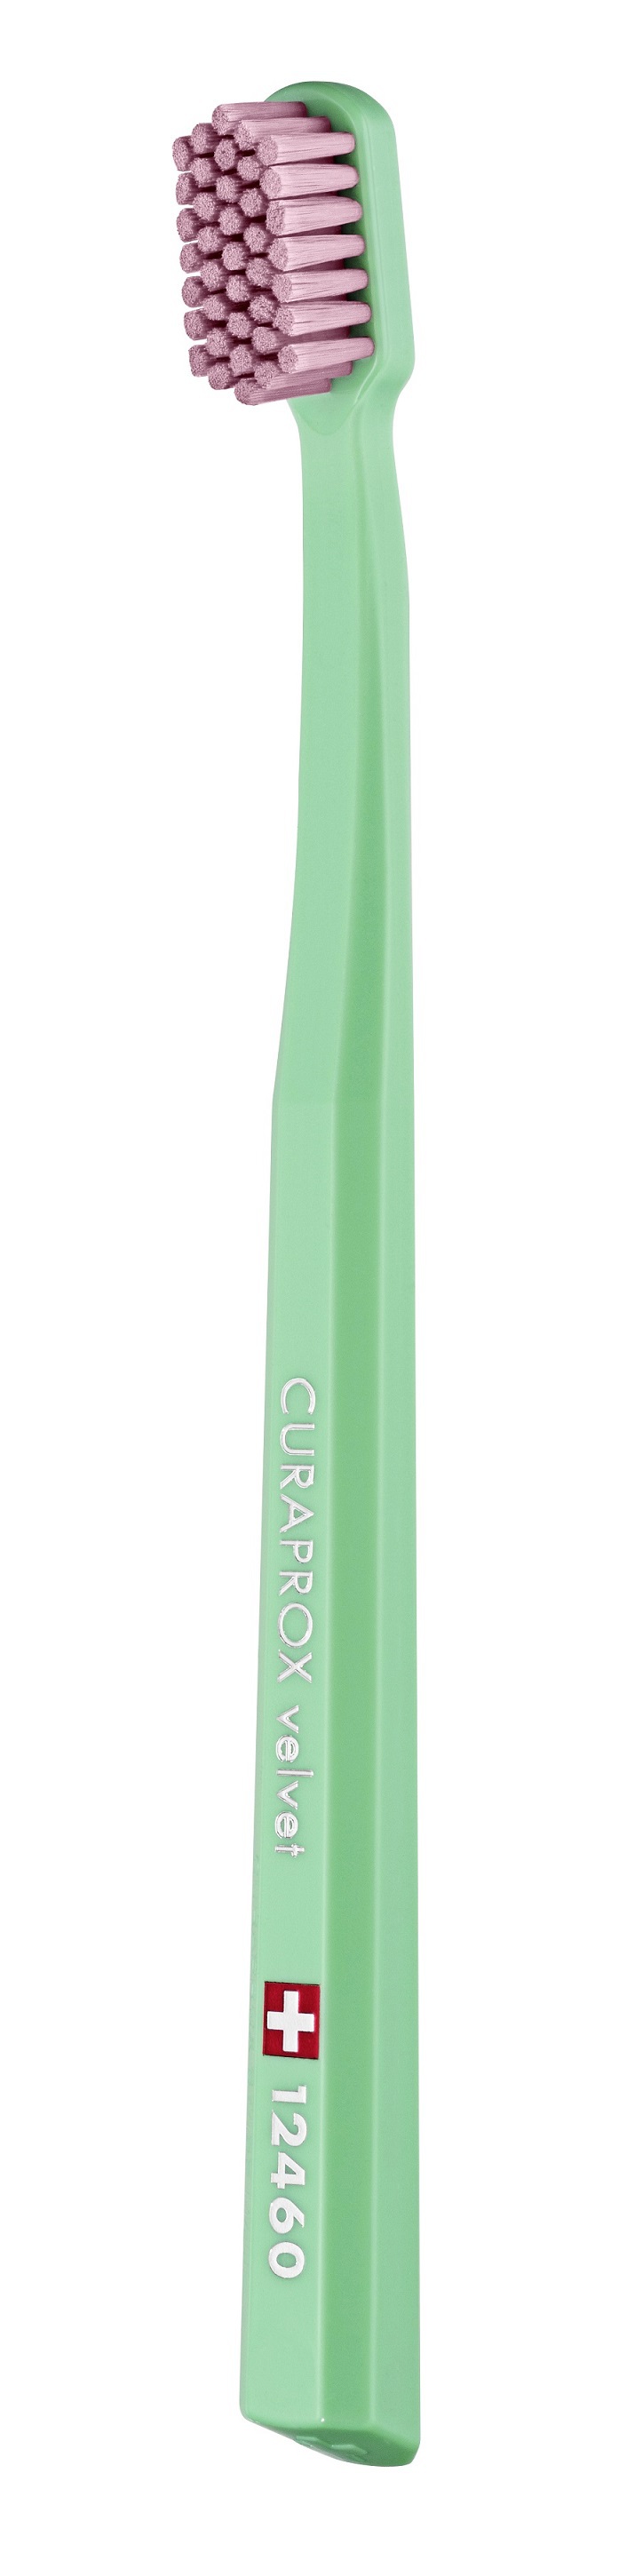 Купить Curaprox Зубная щетка Velvet Megasoft, d 0, 08 мм, 1 шт (Curaprox, Мануальные зубные щетки), Швейцария